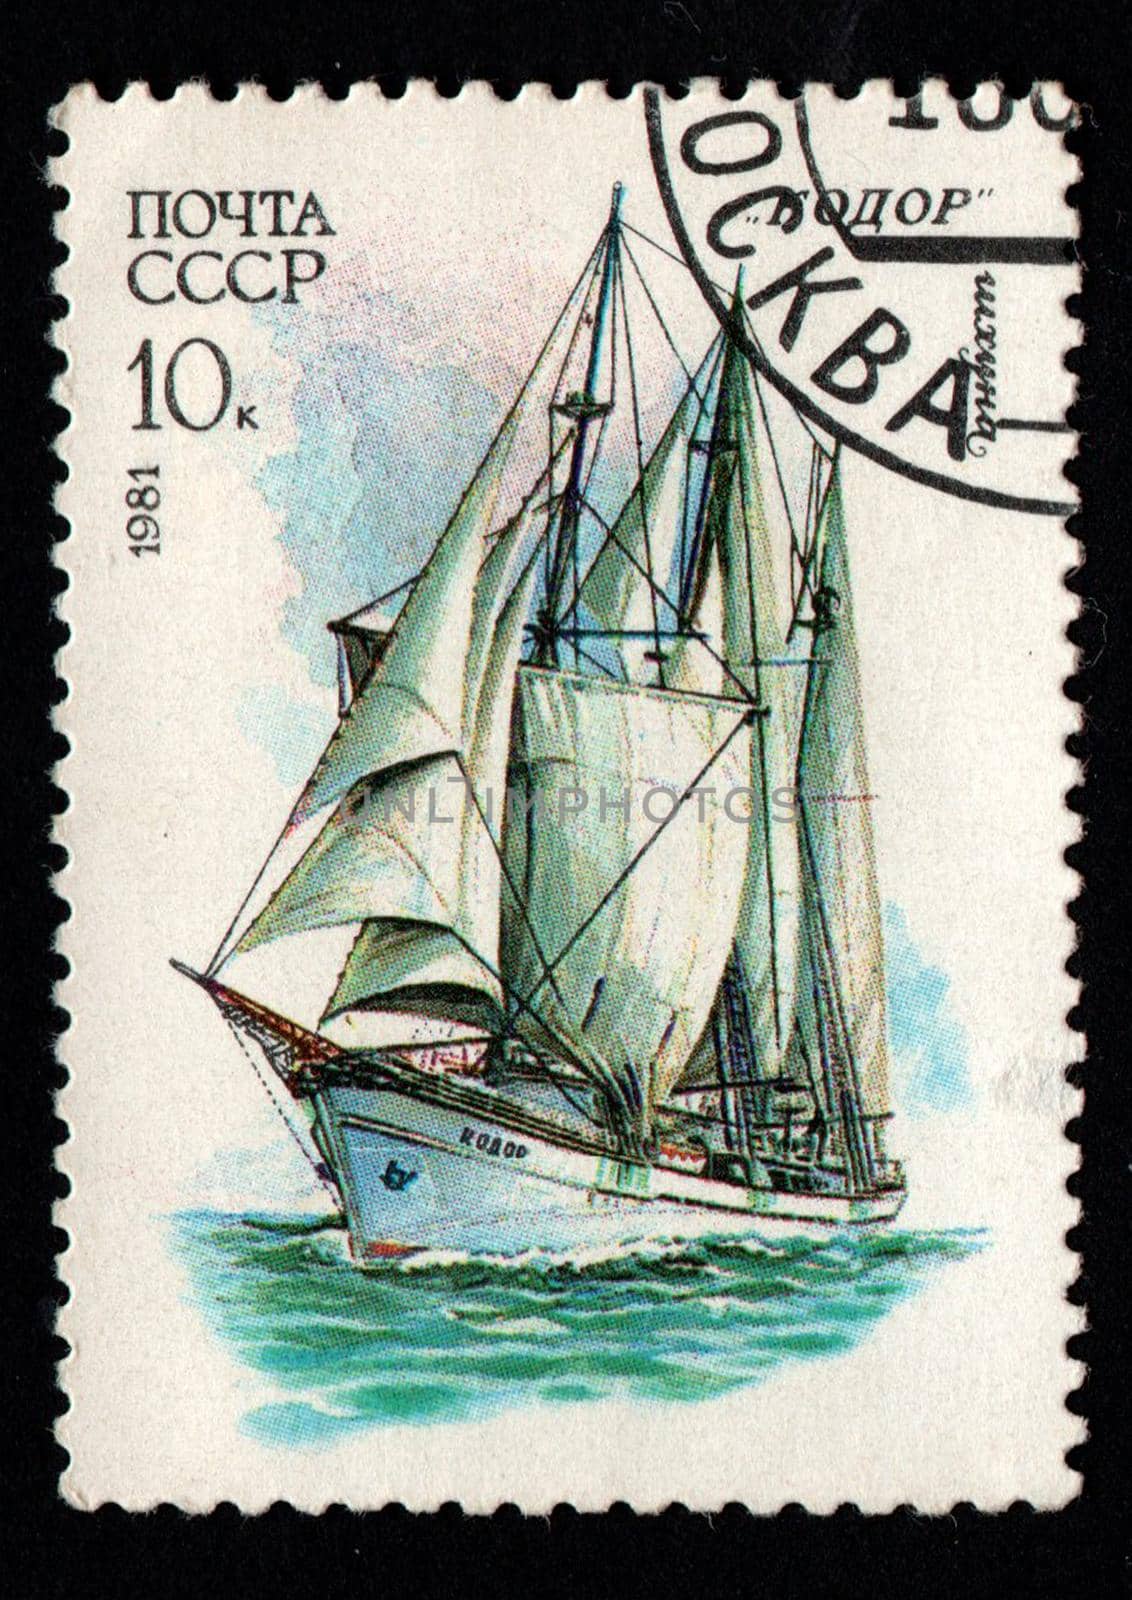 sailing ship schooner Kodor on a USSR postage stamp by alexmak